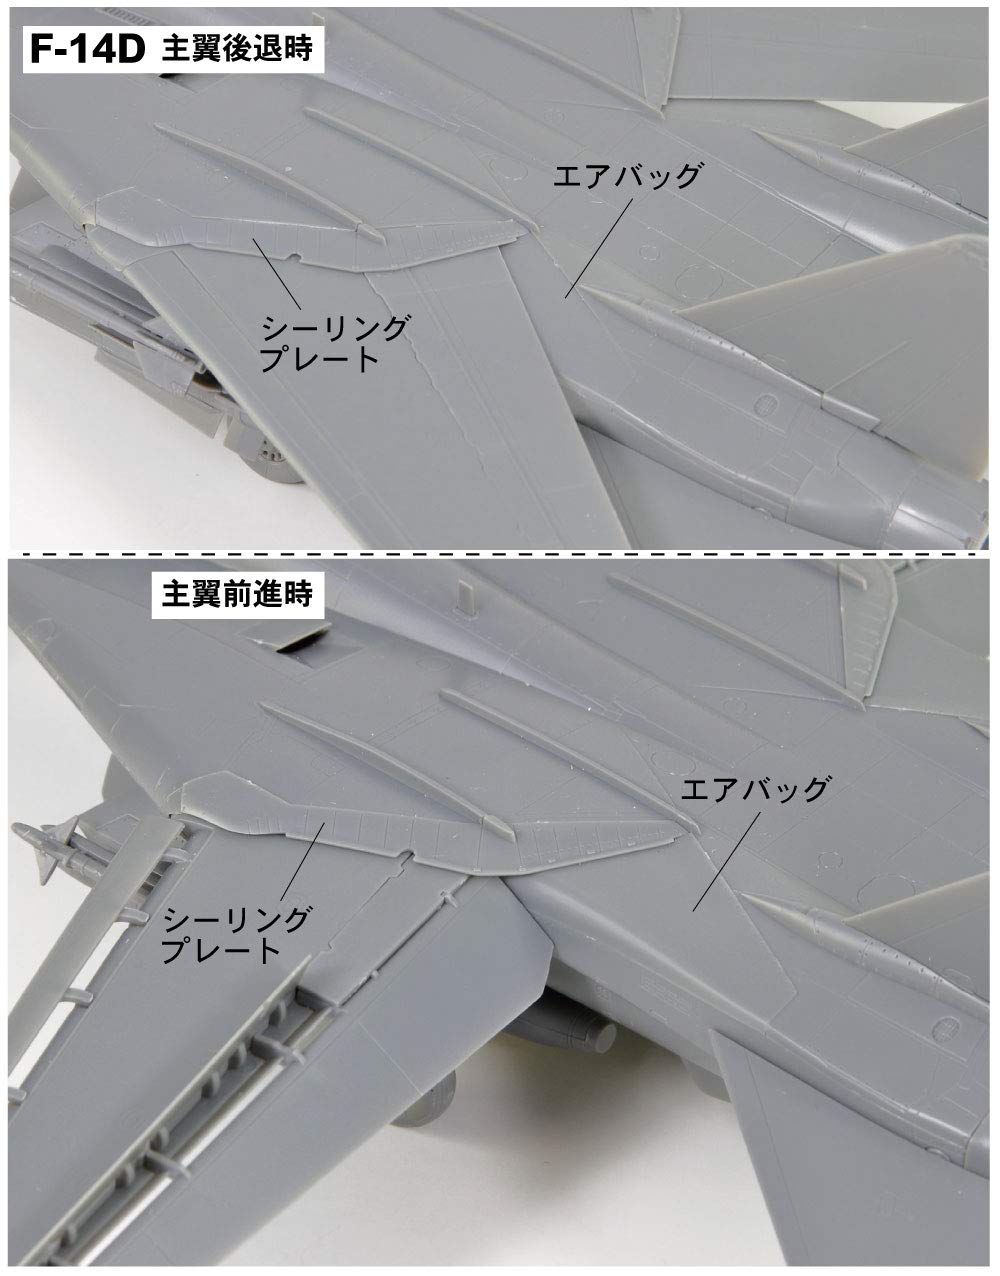 1/72『アメリカ海軍 F-14D VF-2 バウンティハンターズ』プラモデル-005